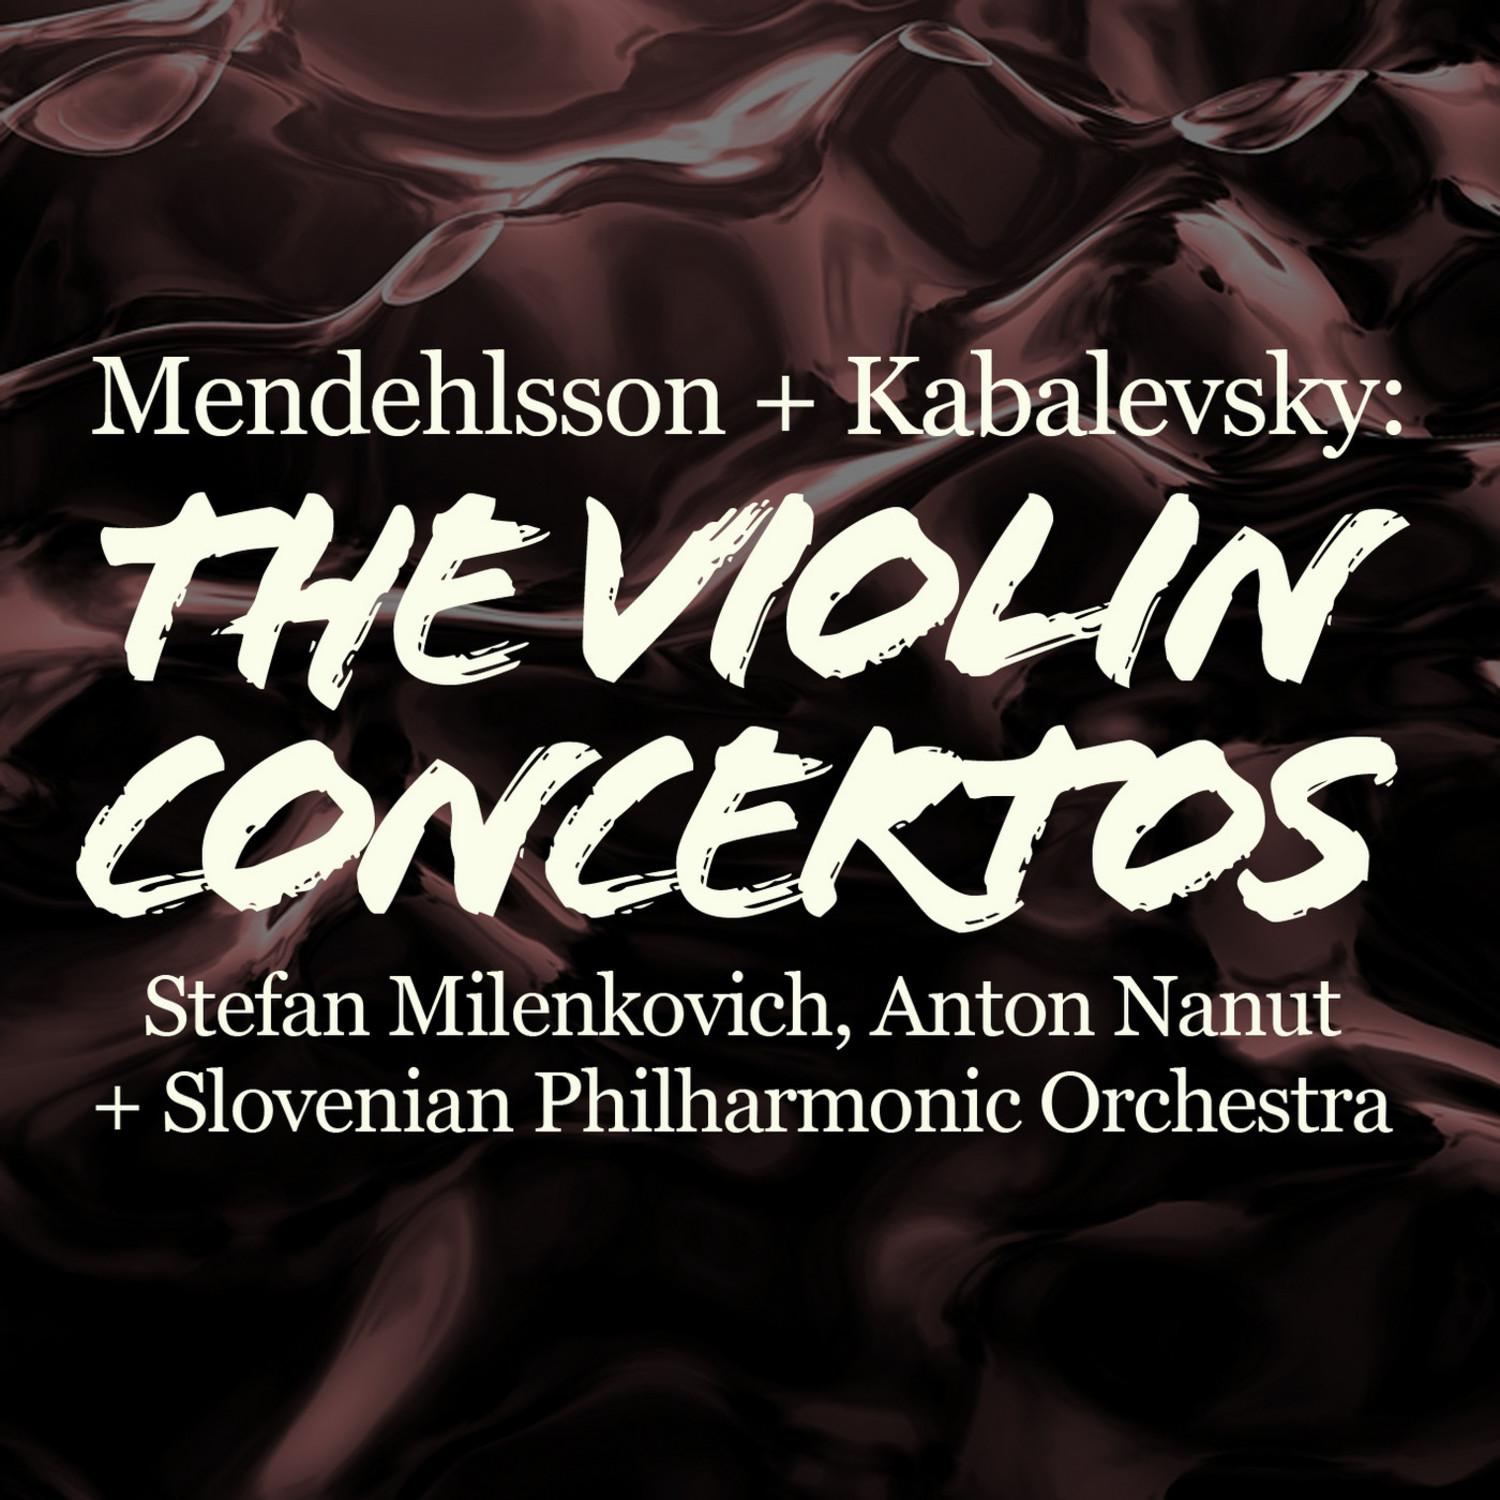 Concerto in C Major for Violin and Orchestra, Op. 48: I. Allegro molto e con brio